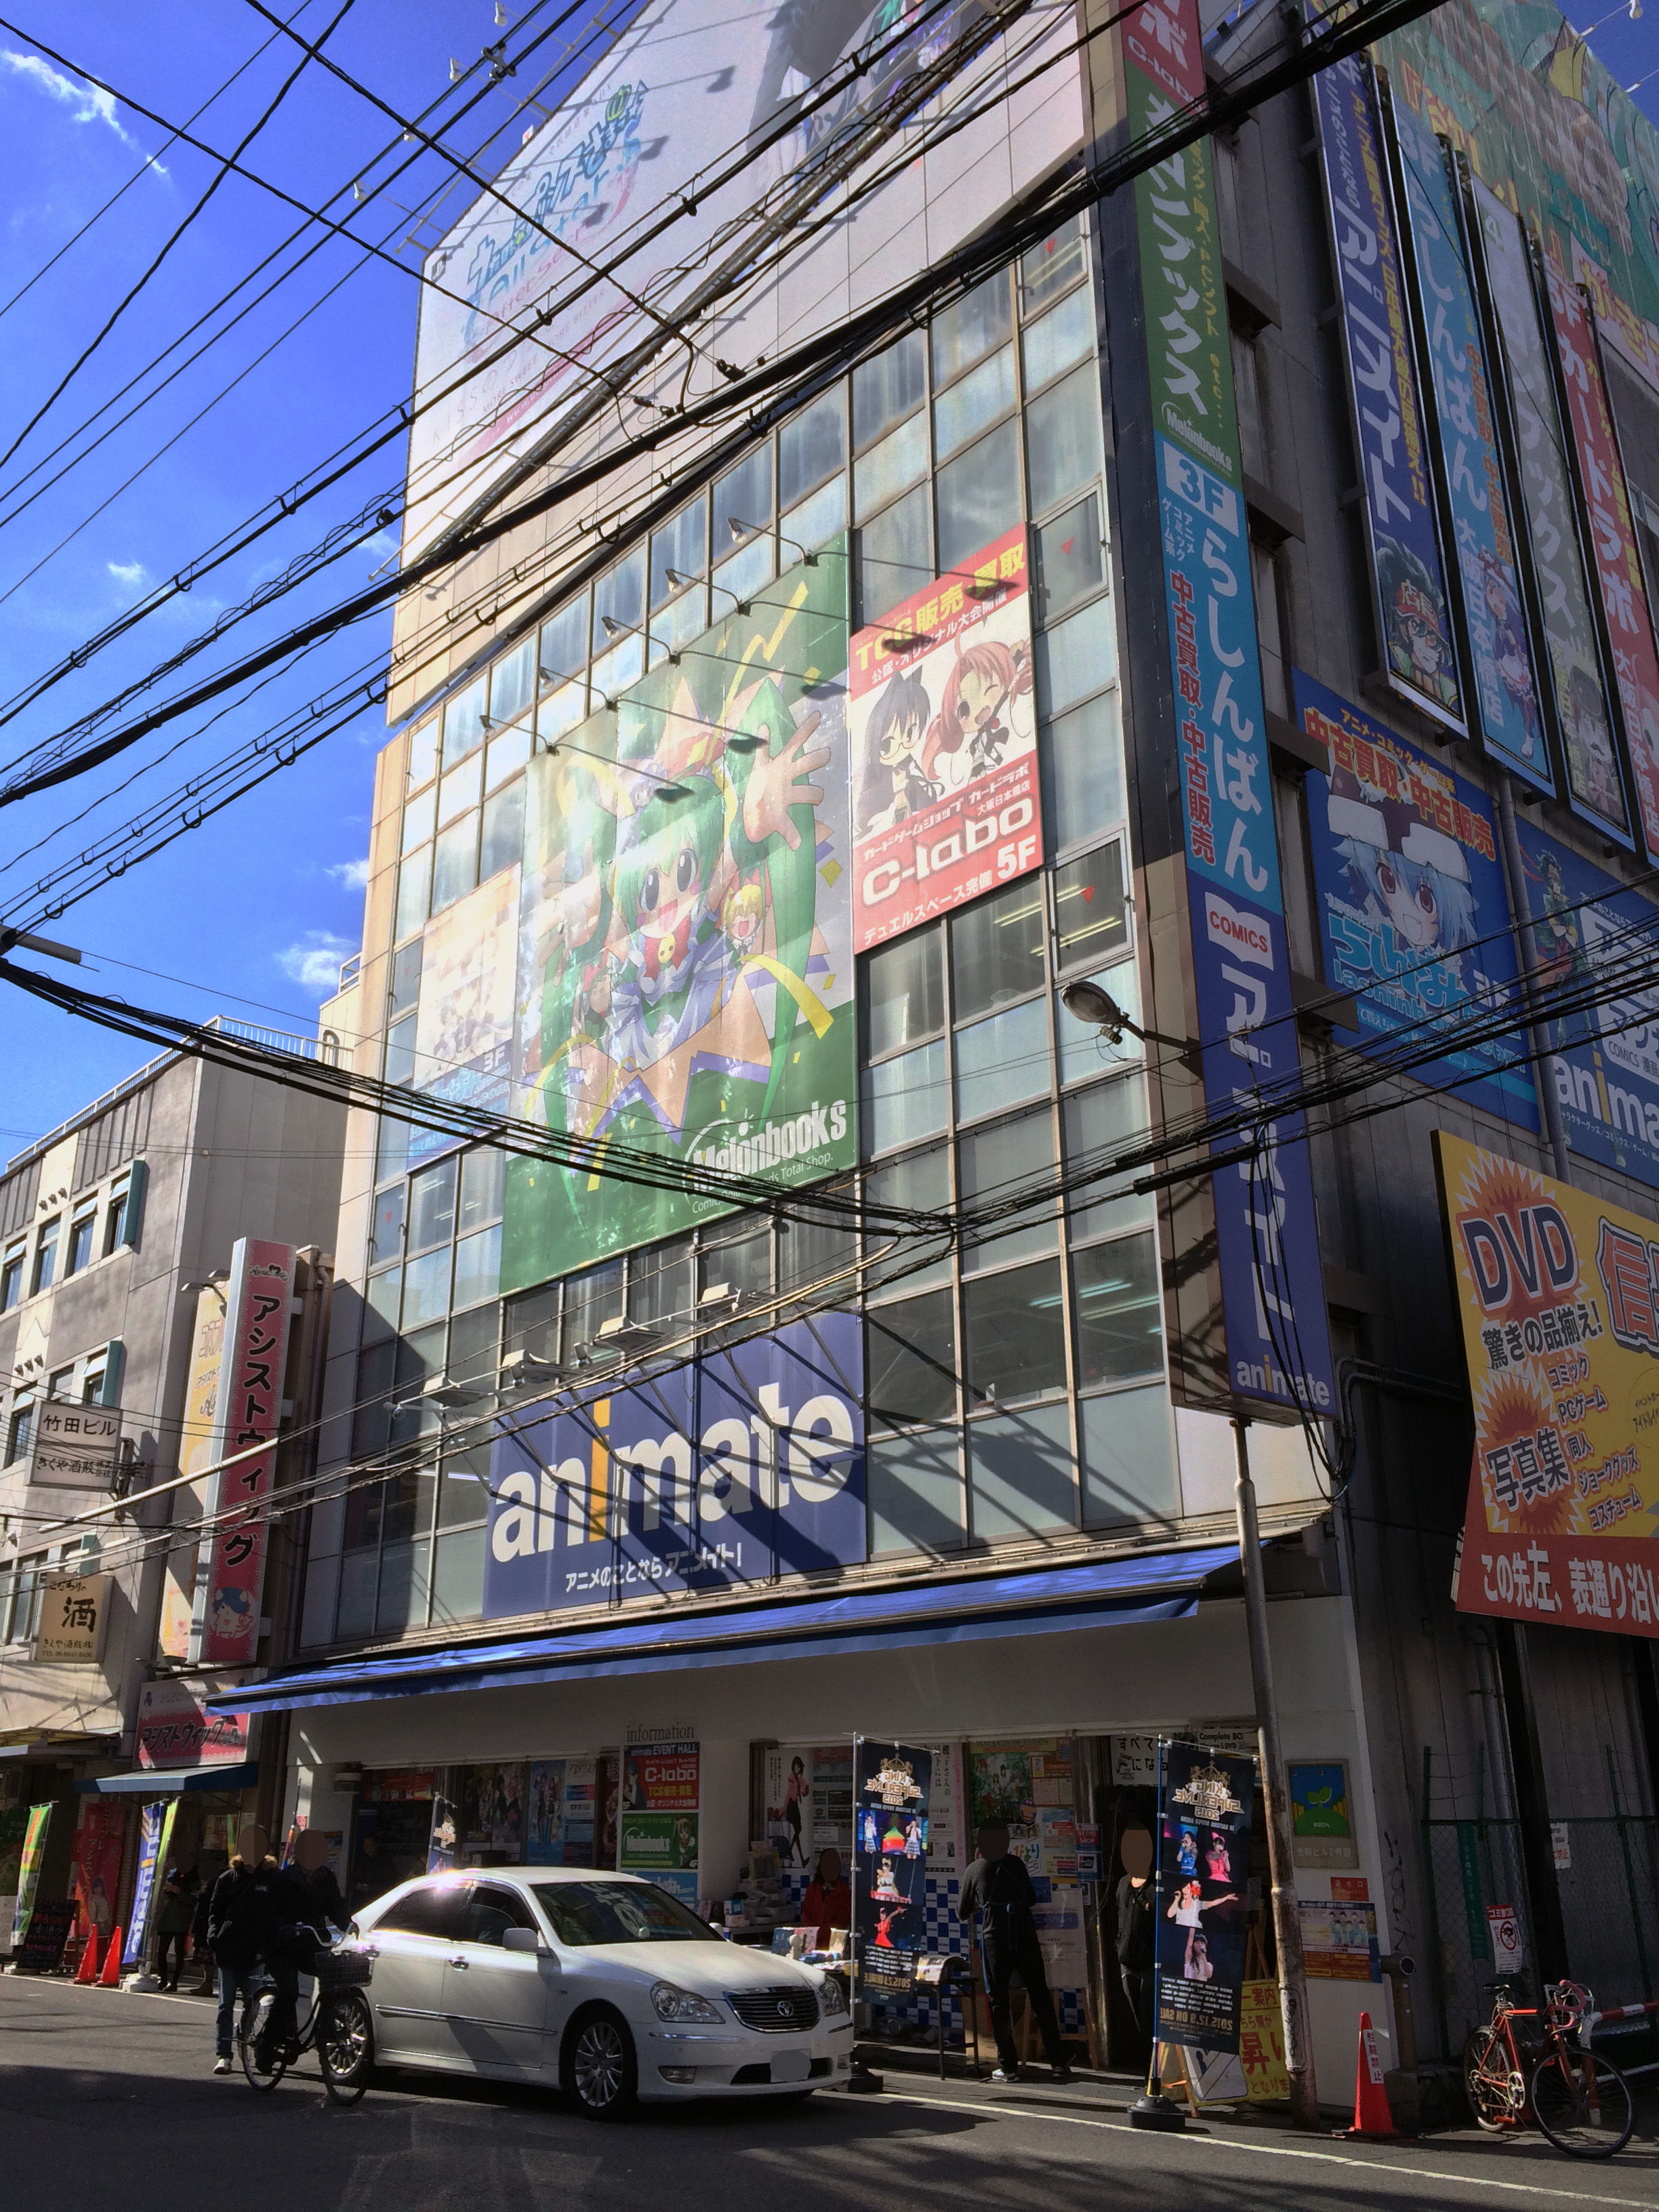 ここなに 6 アニメやコミックの複合施設 アニメイトビル かつて大阪日本橋でんでんタウンで生まれ育ったおっちゃんの思い出ブログ